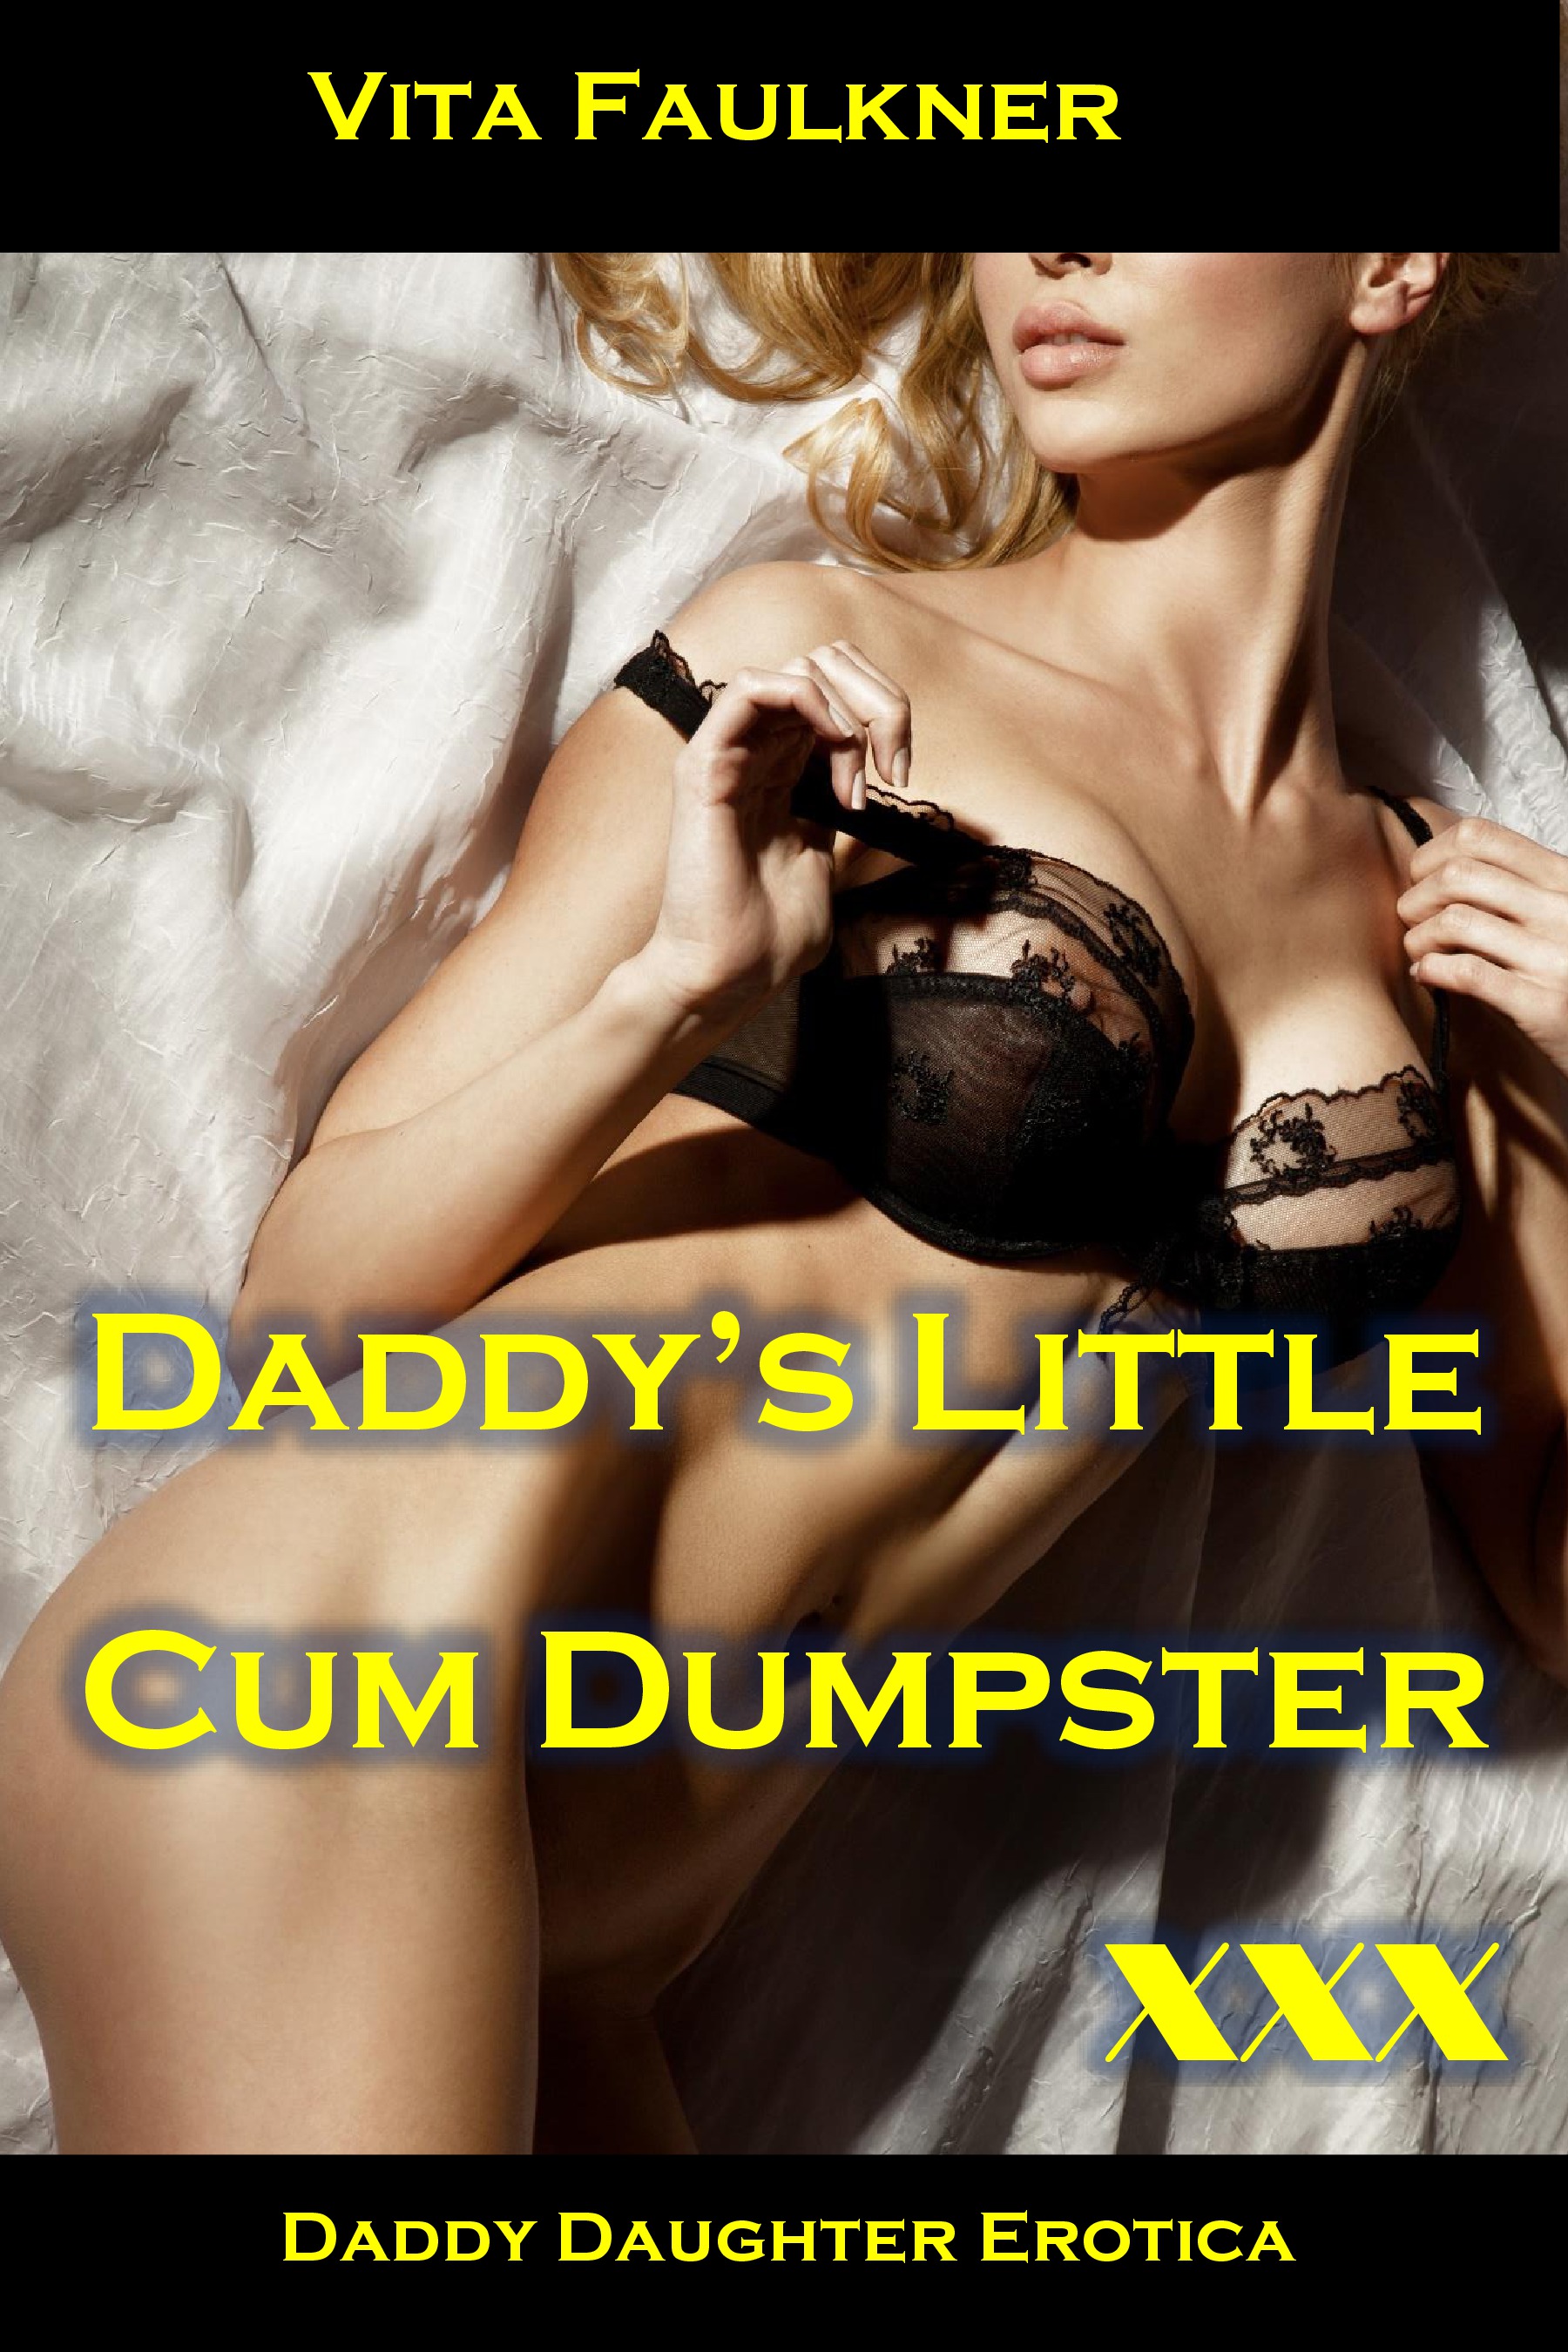 Daddys little cum dumpster